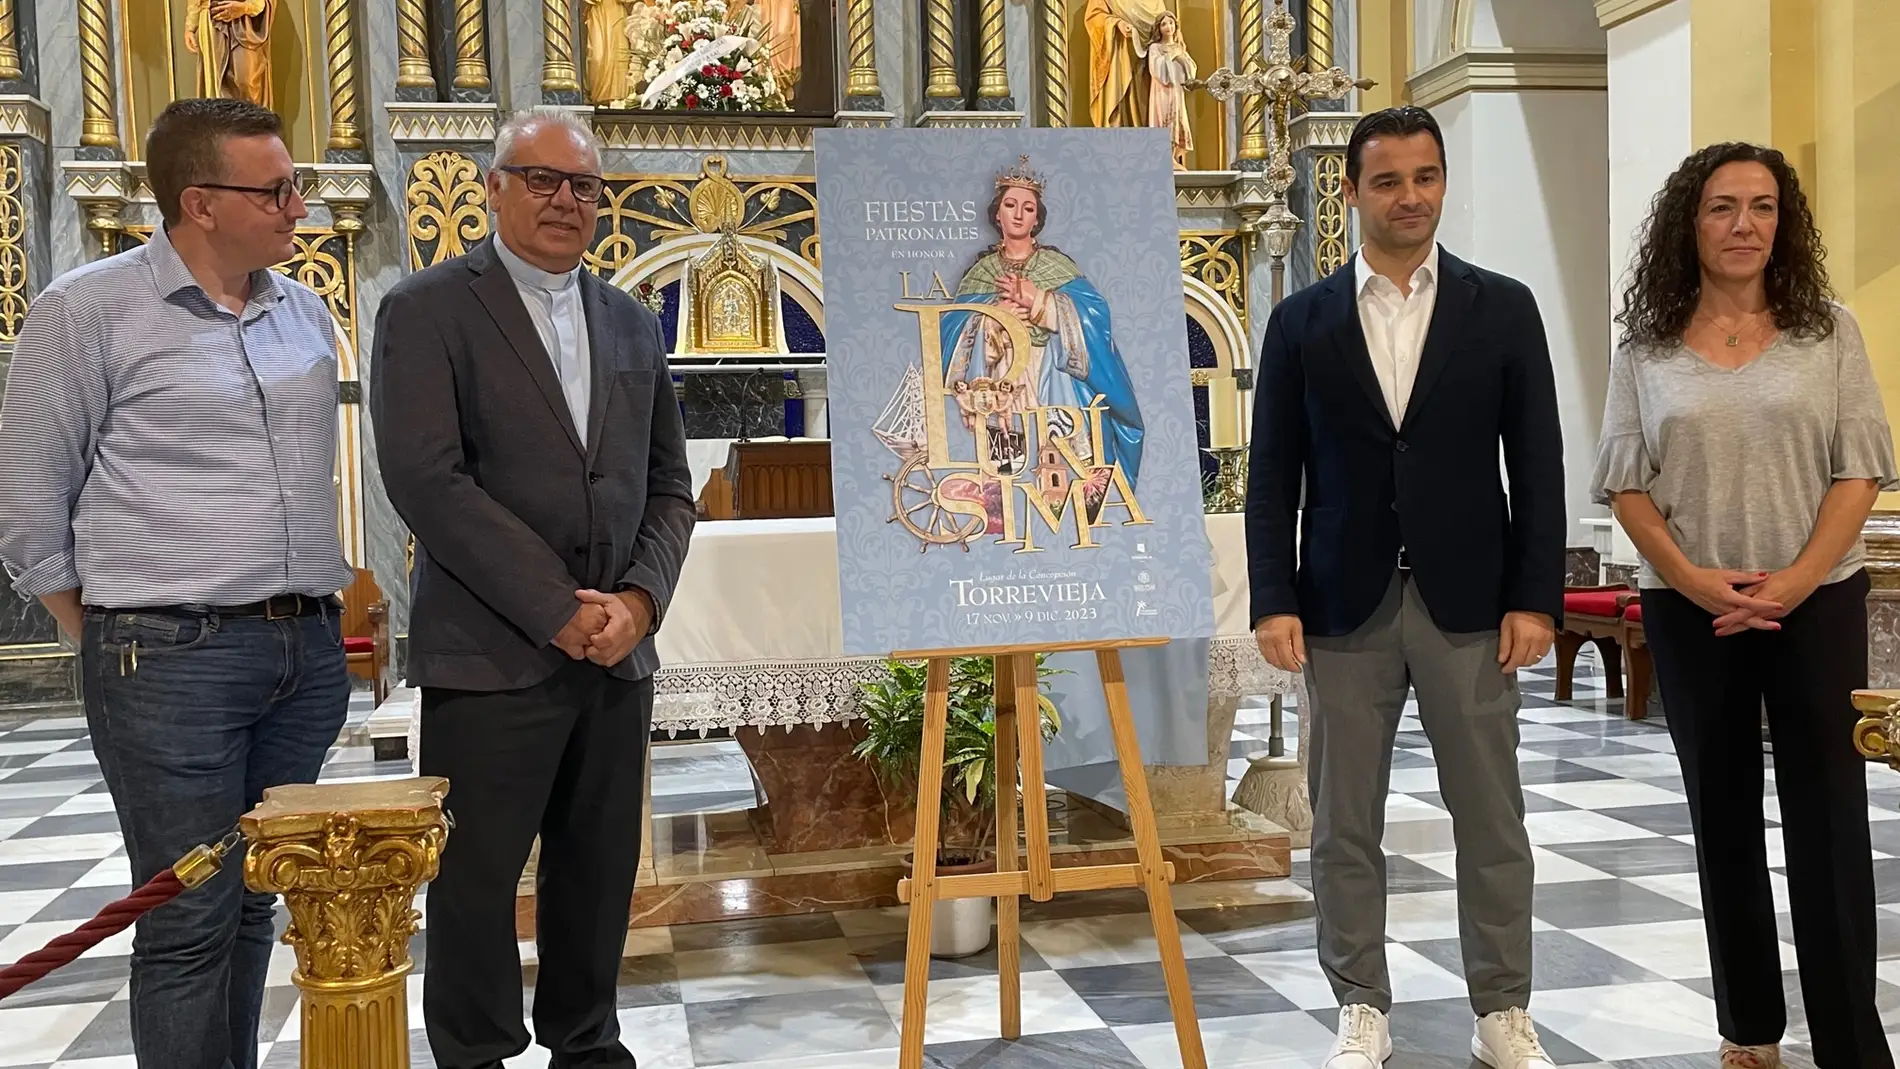 Torrevieja presenta el cartel anunciador de las fiestas patronales en honor a la Inmaculada Concepción 